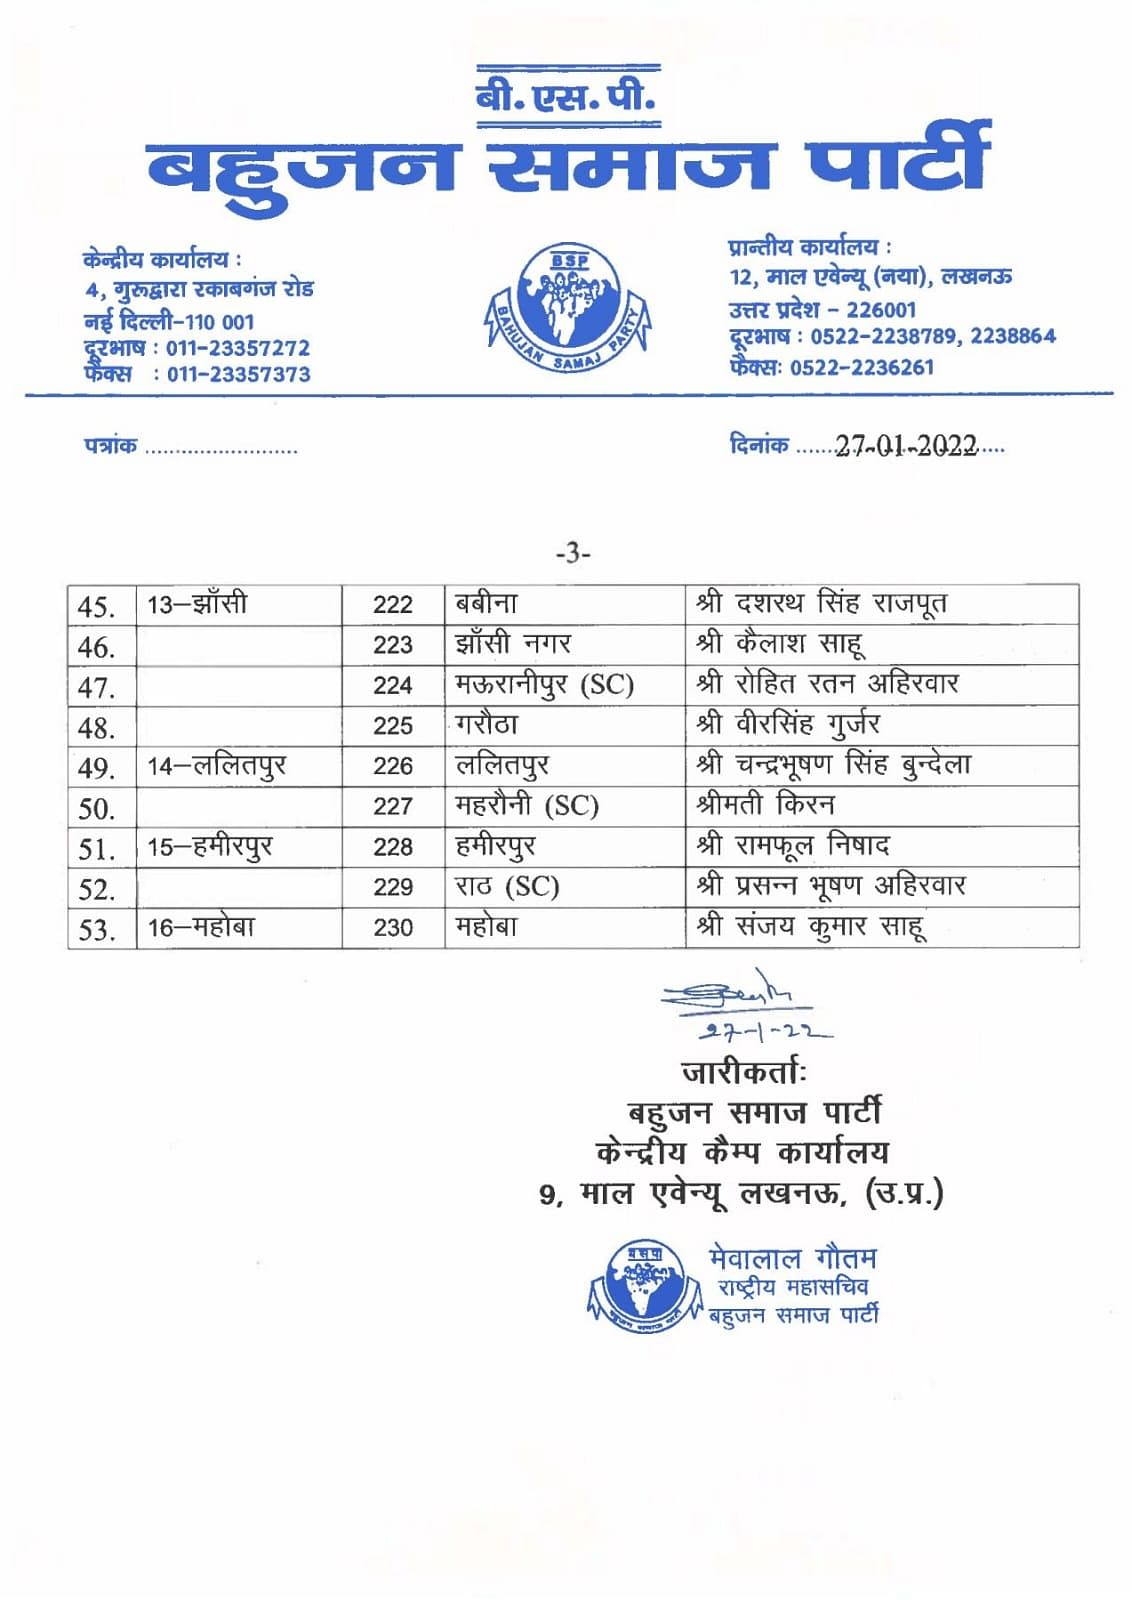 UP चुनाव: BSP ने 53 उम्मीदवारों के नामों की घोषणा की, देखें पूरी लिस्ट